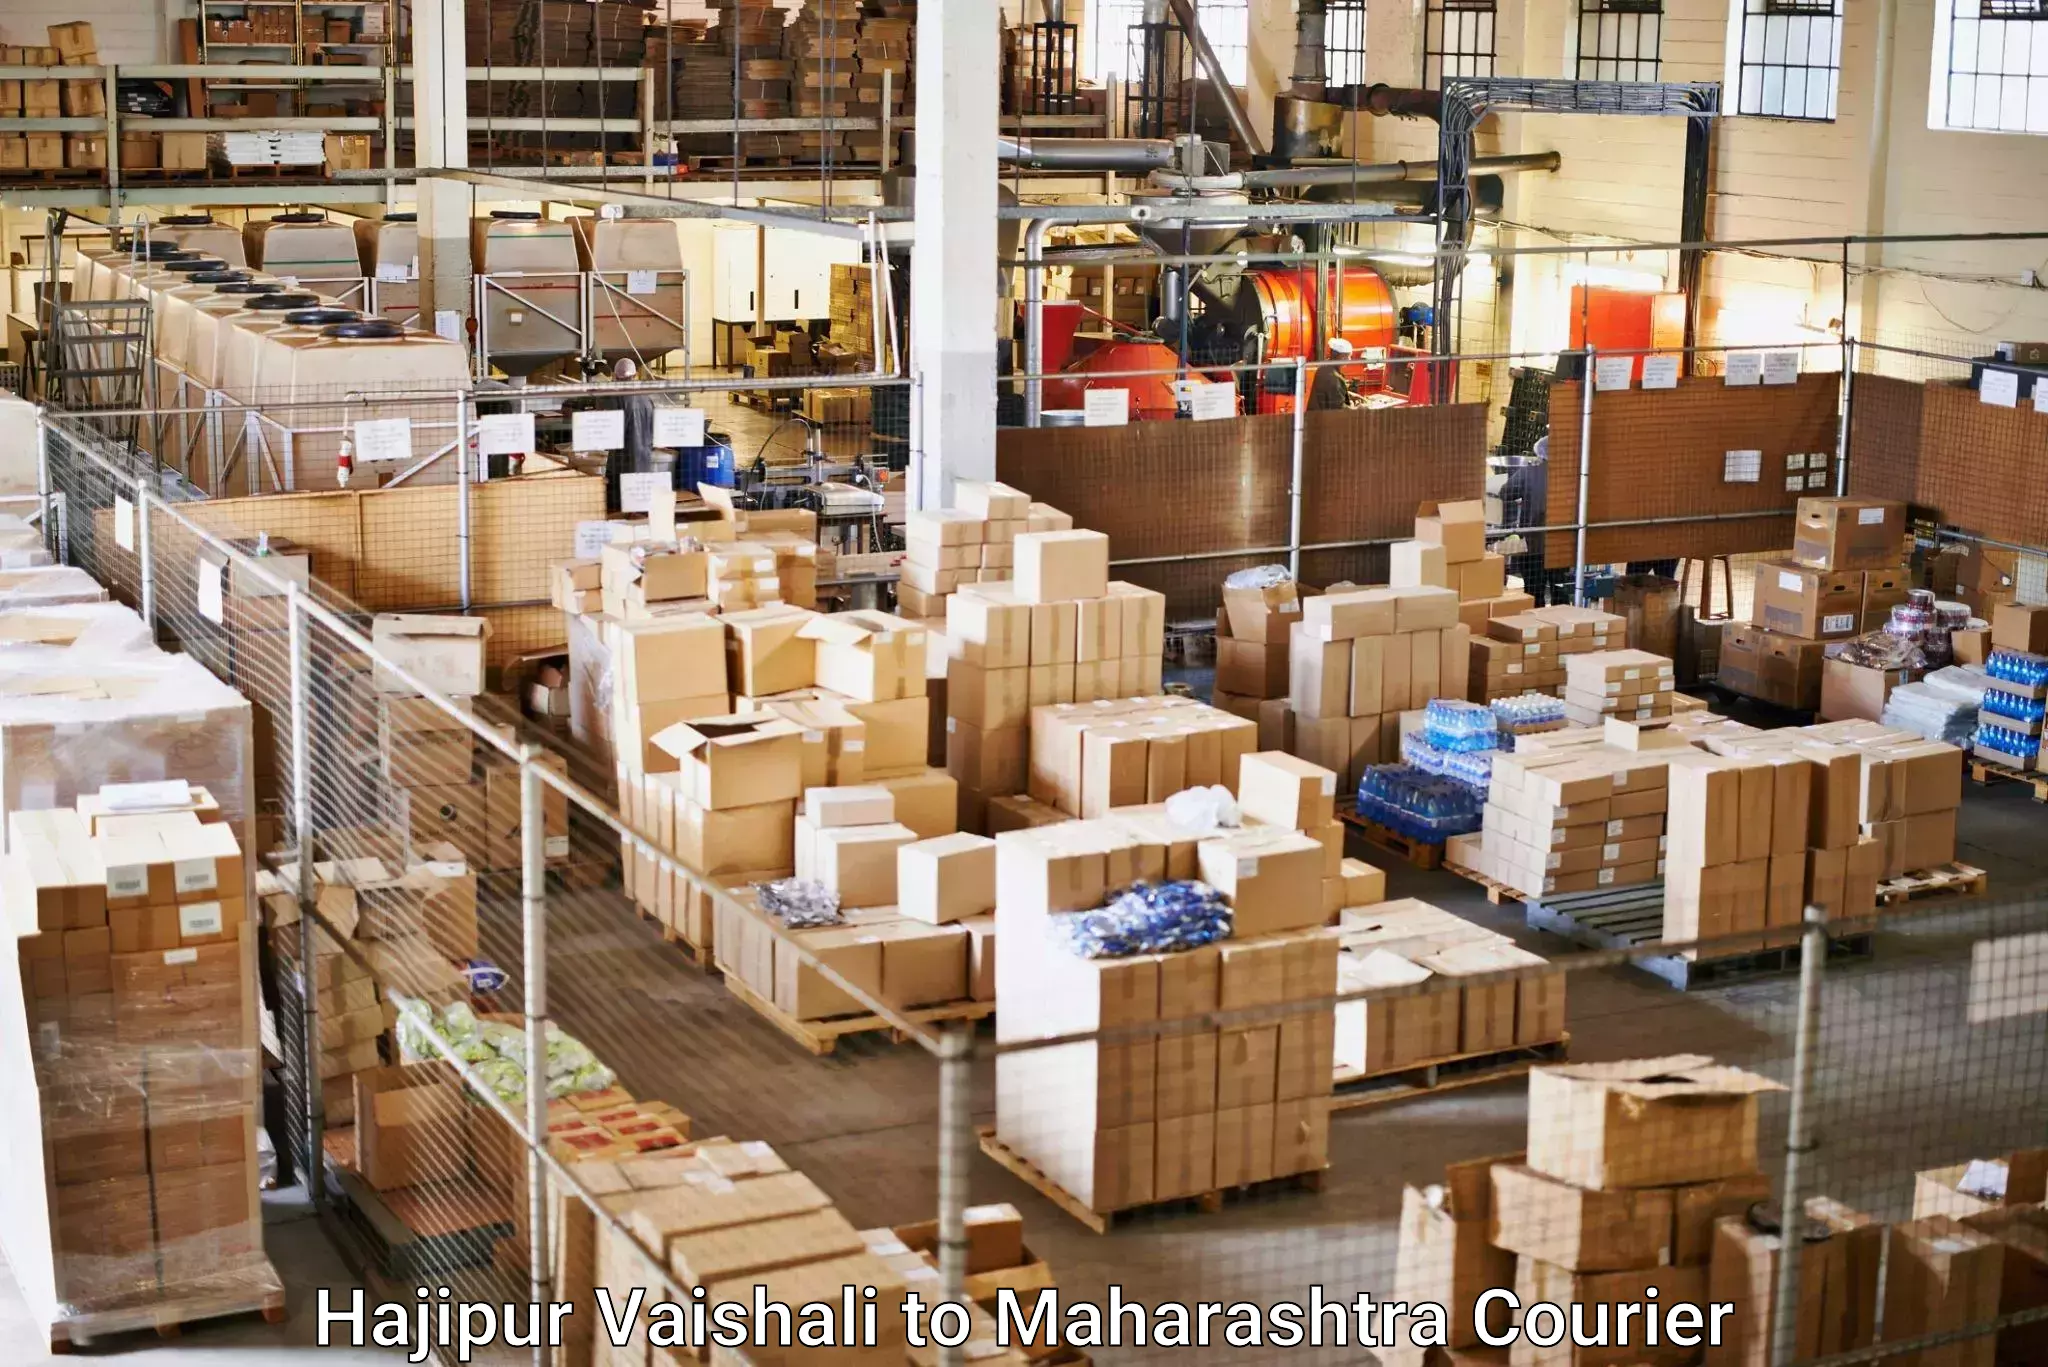 Seamless shipping experience Hajipur Vaishali to Jalna